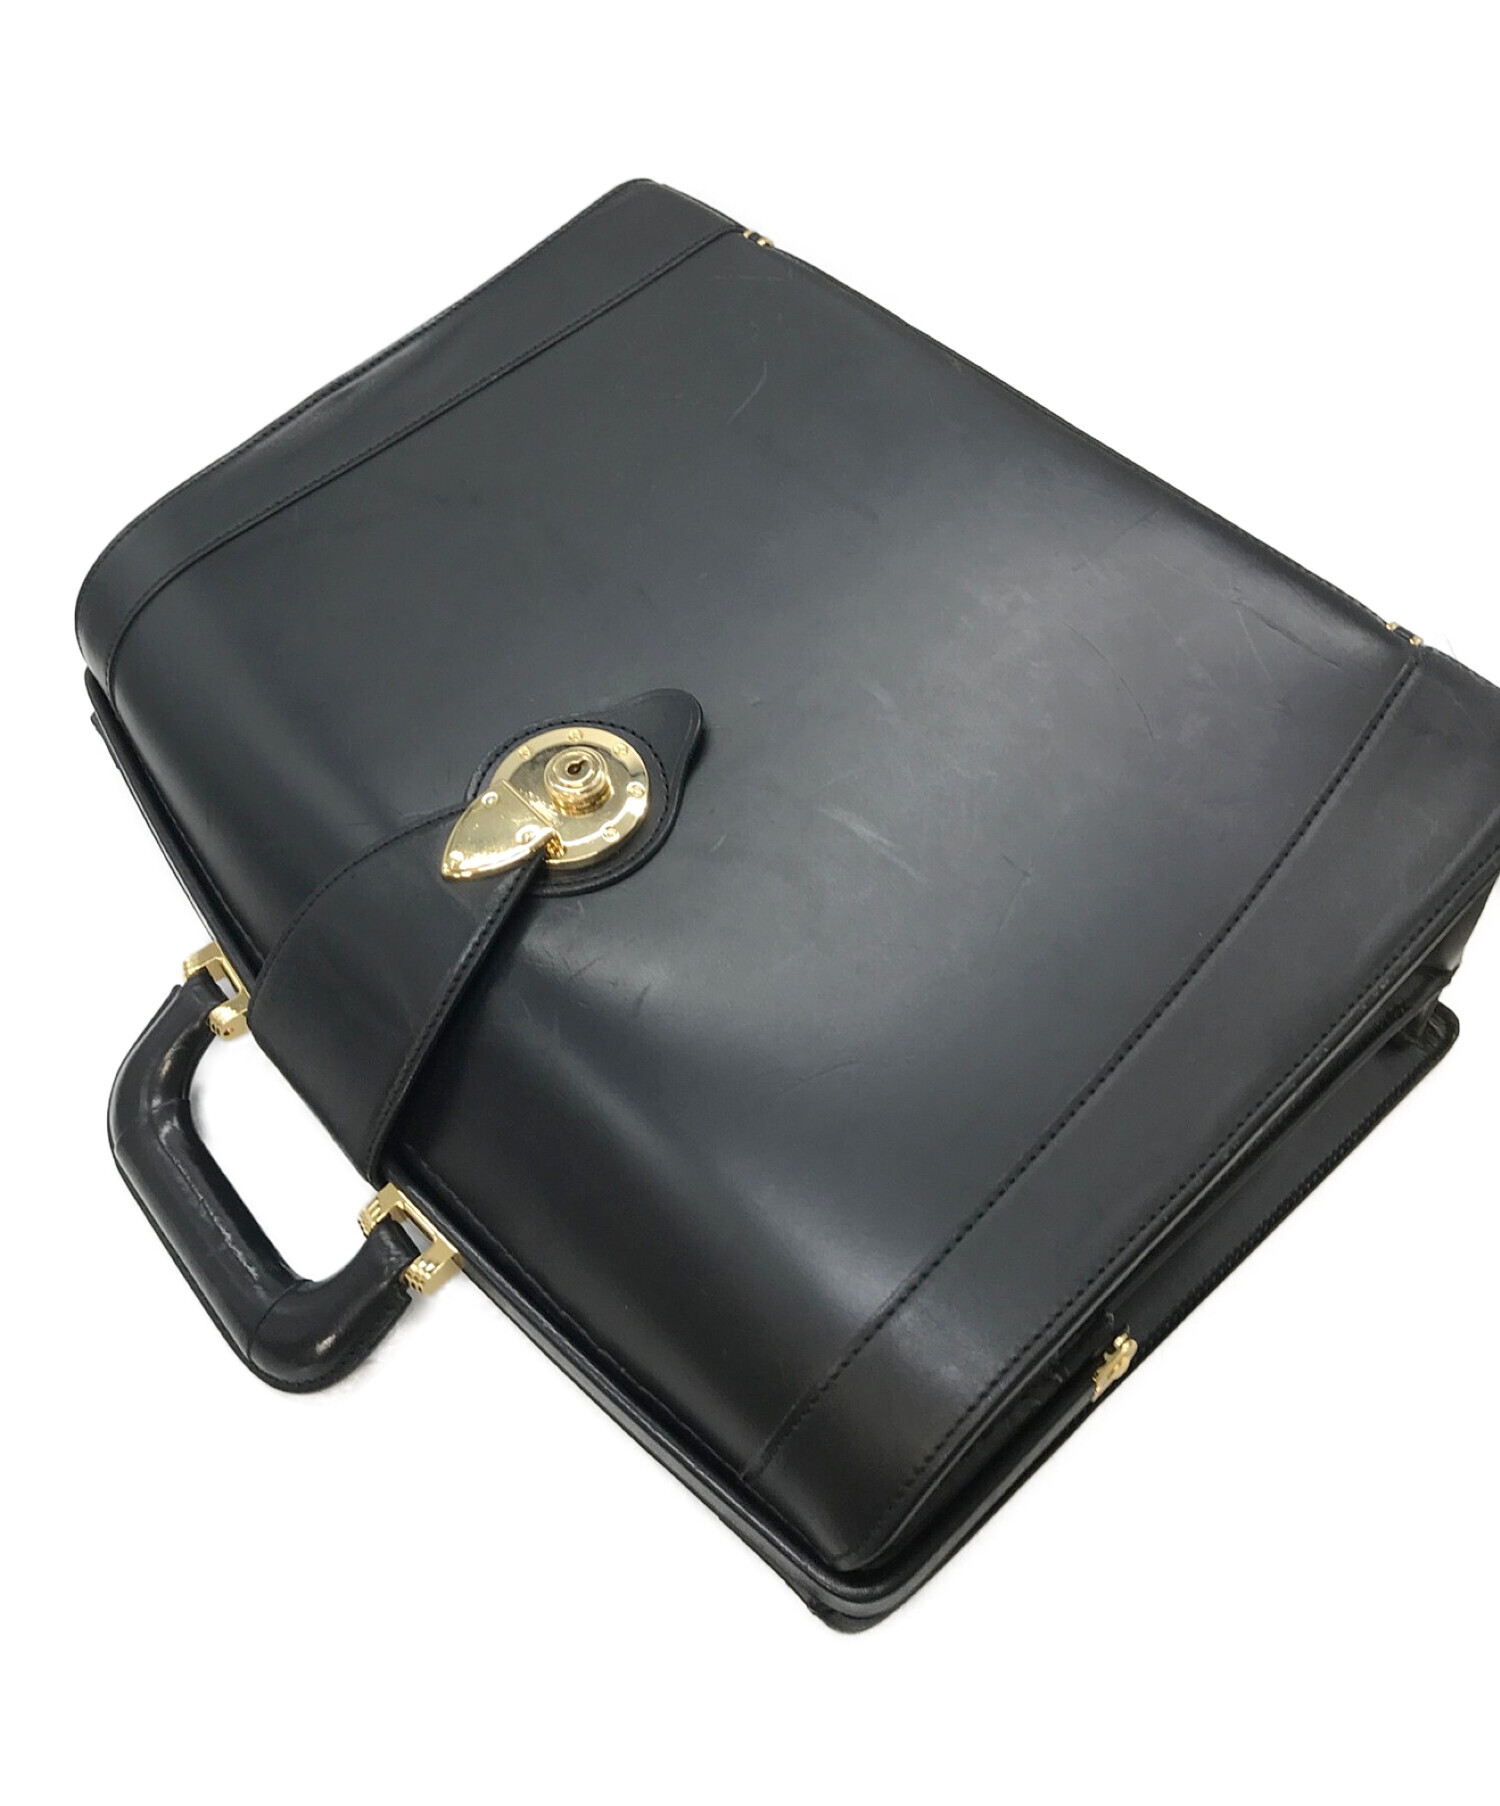 土屋鞄LEATHER DARES BAG/土屋カバンレザーダレスバッグ - ビジネスバッグ